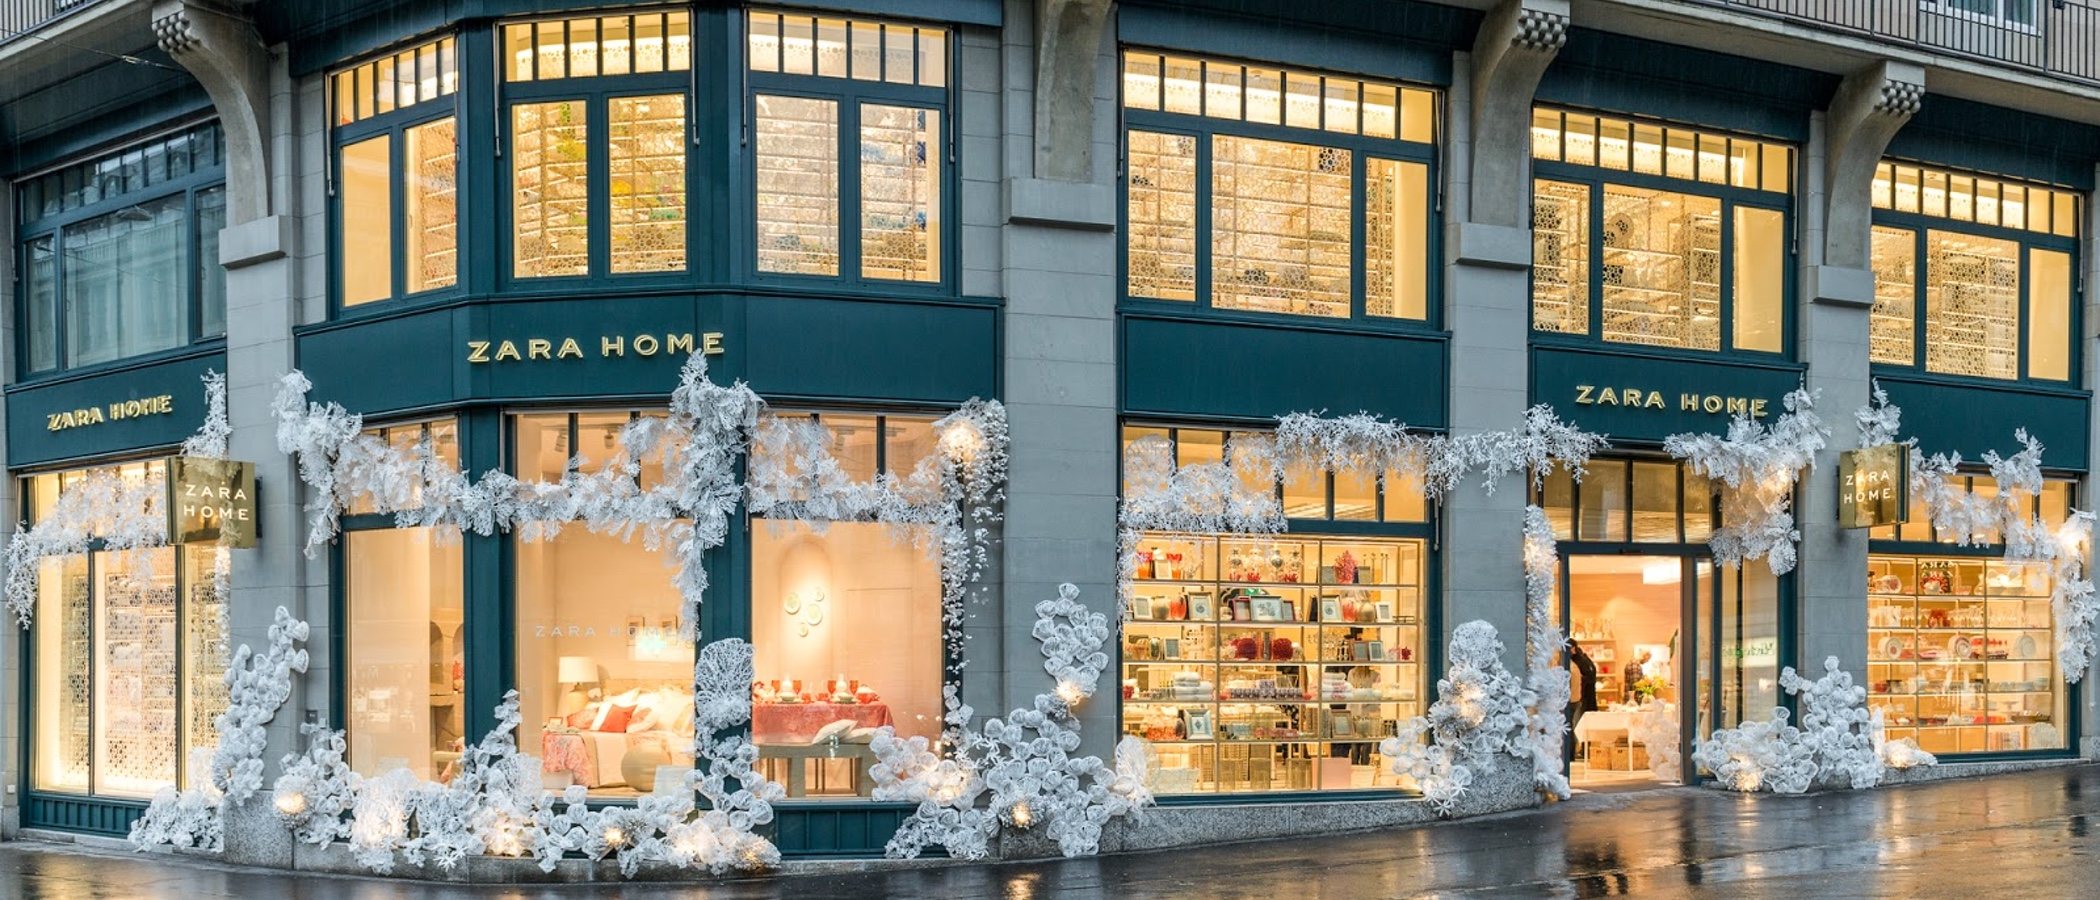 Zara Home se integra en las tiendas de Zara a partir del próximo otoño 2019